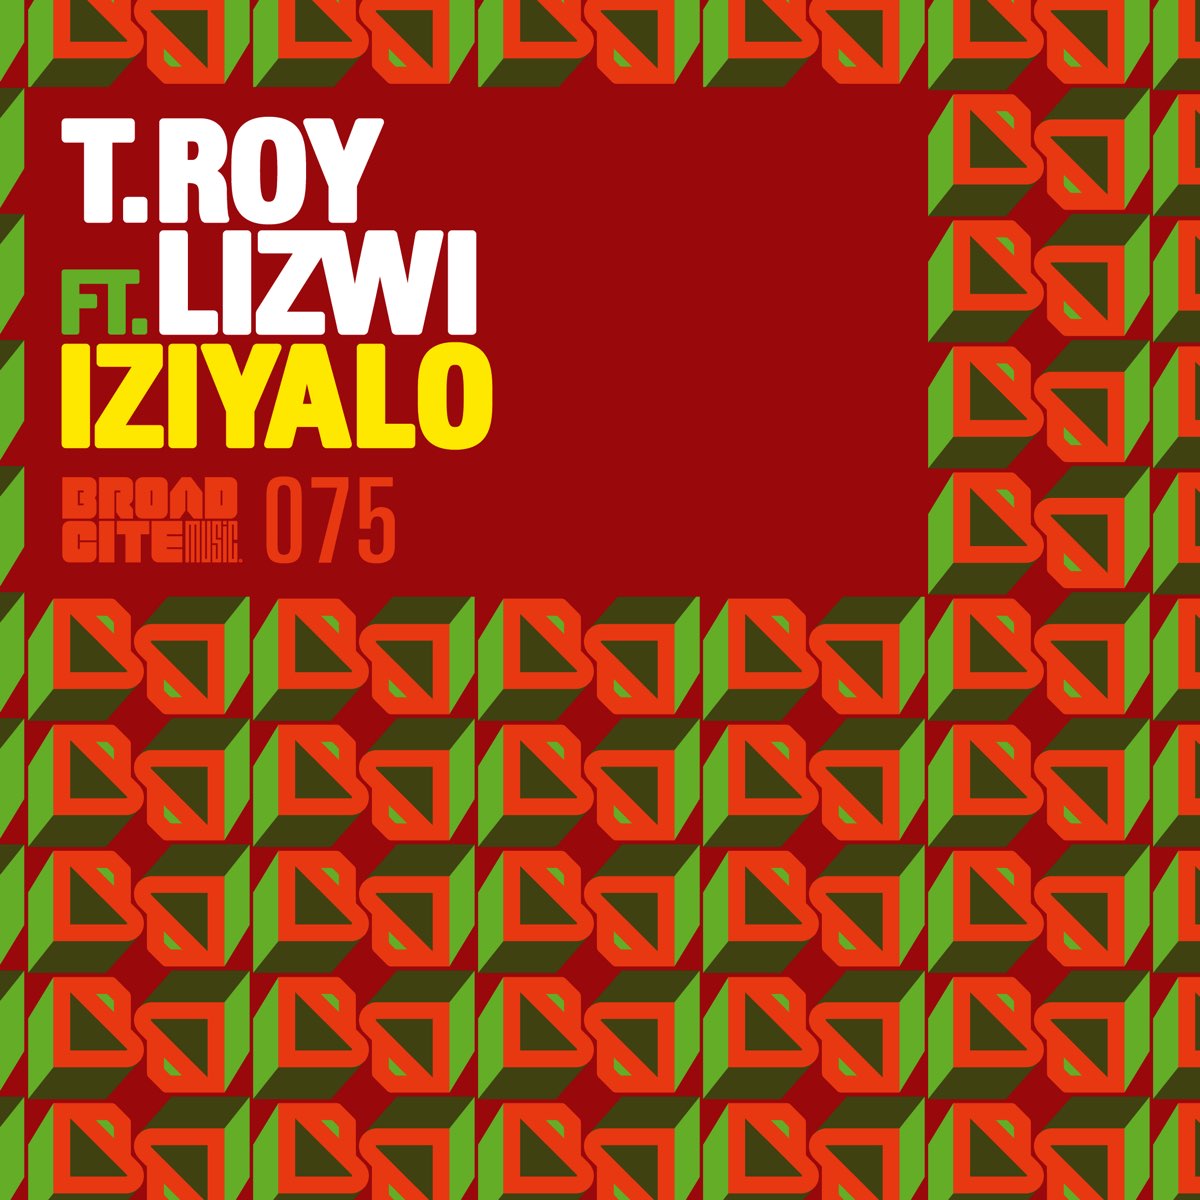 Amathole joezi lizwi remix mp3. Lizwi. T'Roy. S'T'Roy Mix. Waves & WAVS (feat. Lizwi) от Ahmed Spins.